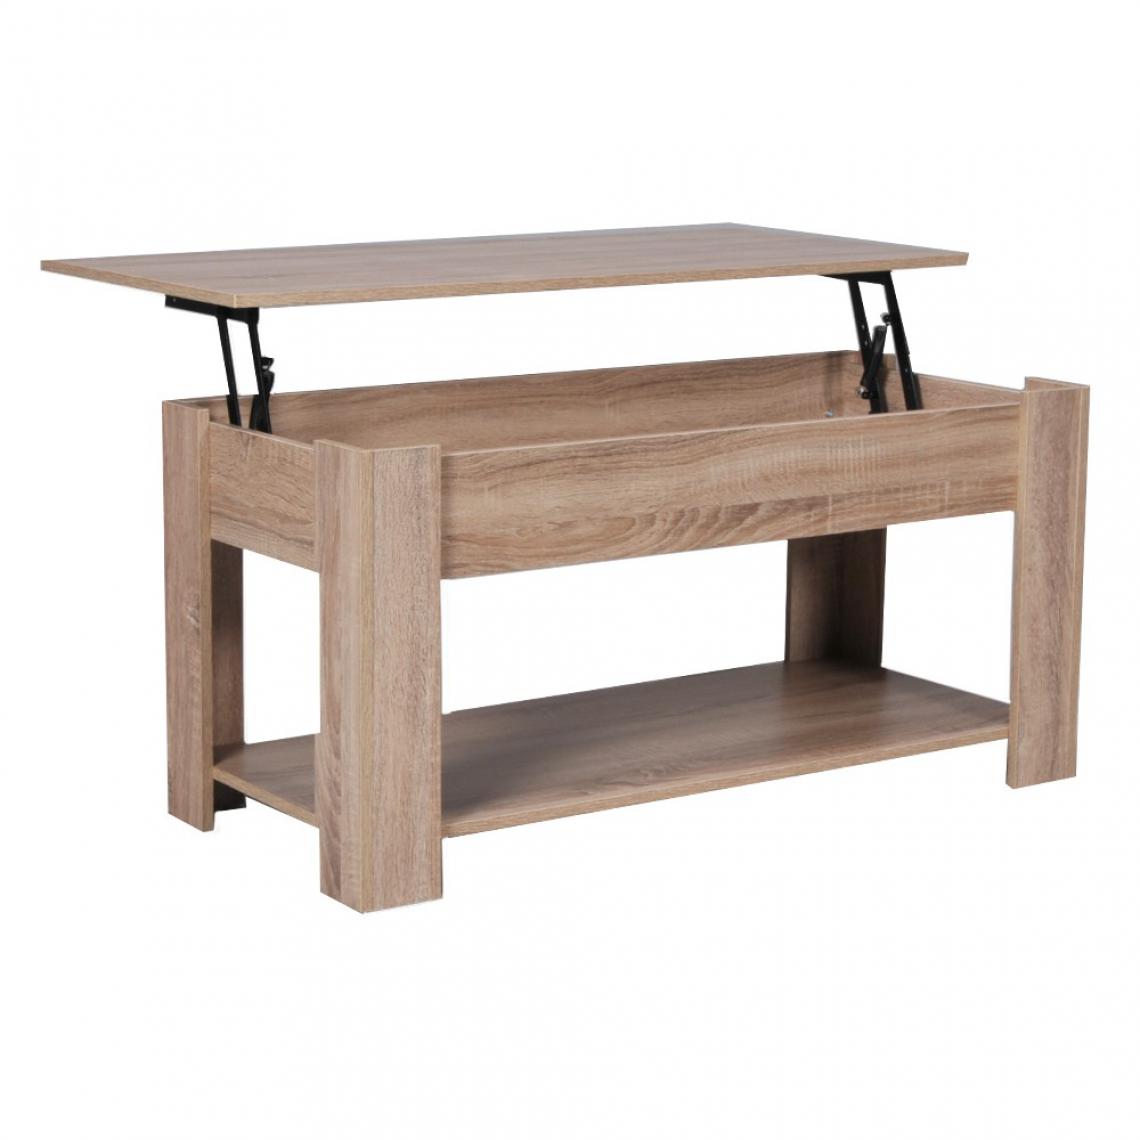 Le Quai Des Affaires - Table basse UTAH 100x50cm / Chêne blanchi - Tables basses